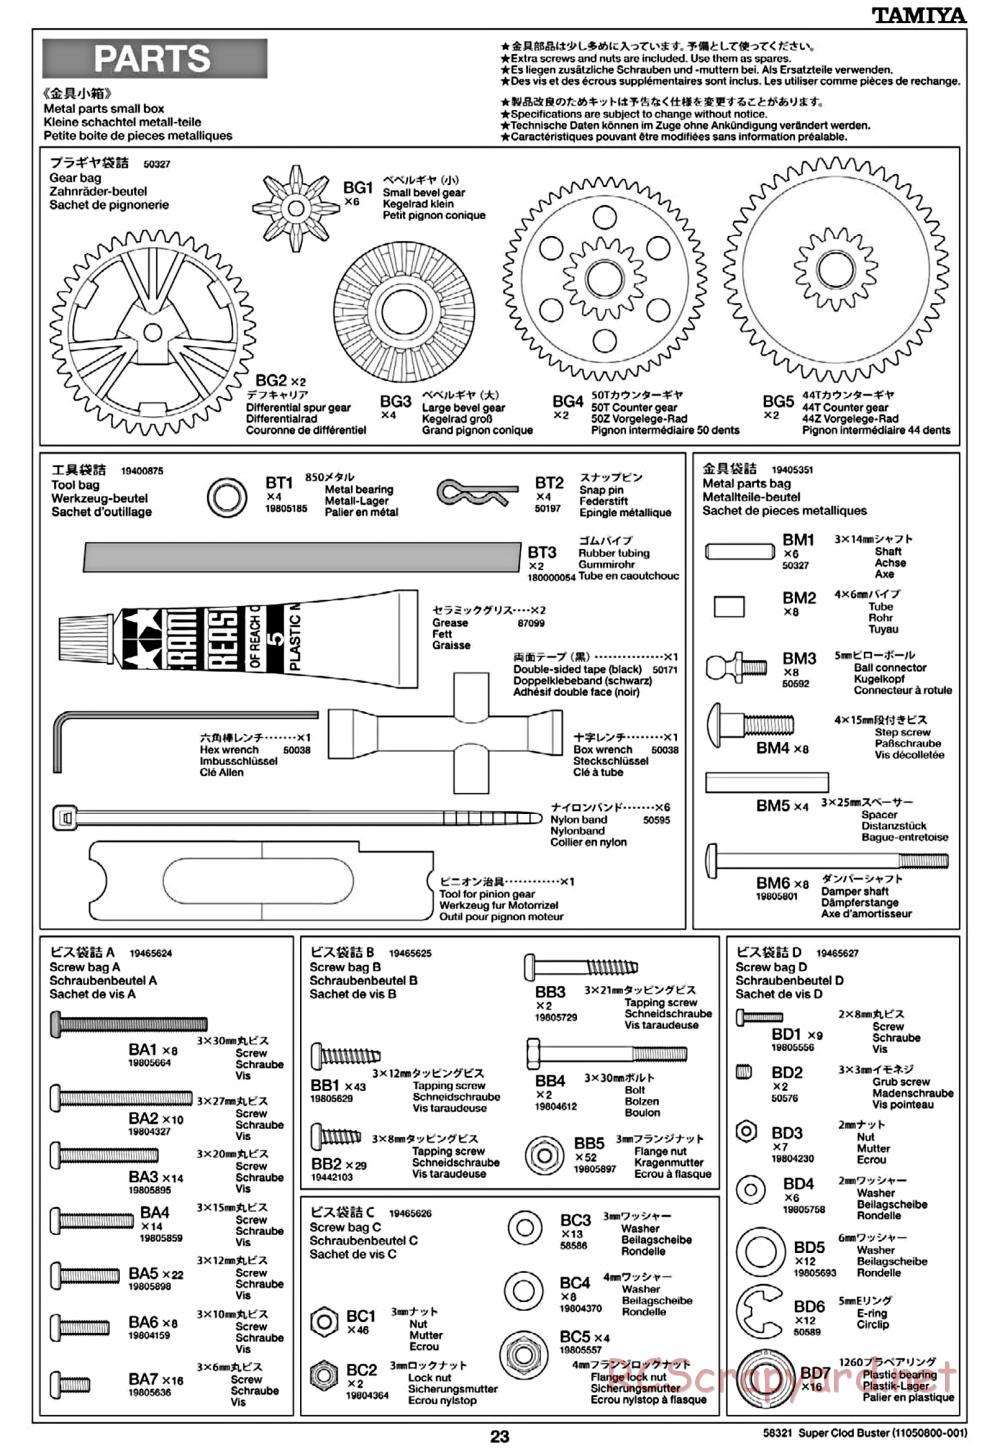 Tamiya - Super Clod Buster Chassis - Manual - Page 23